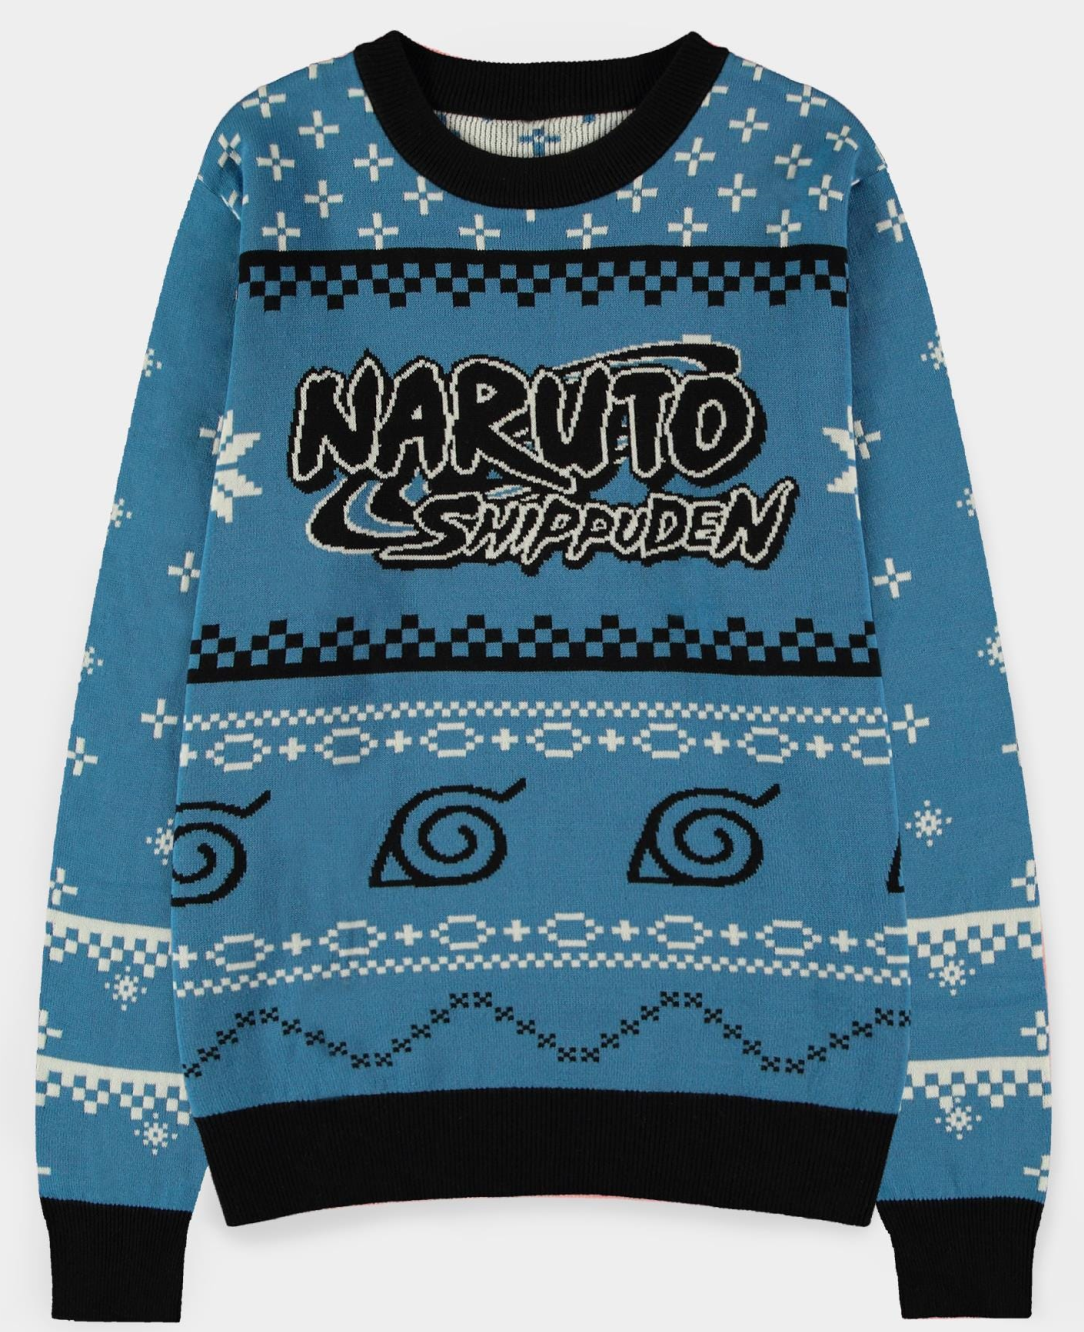 Abbigliamento Naruto Shippuden: Christmas Jumper Multicolor (Maglione Unisex Tg. L) NUOVO SIGILLATO, EDIZIONE DEL 25/04/2022 SUBITO DISPONIBILE